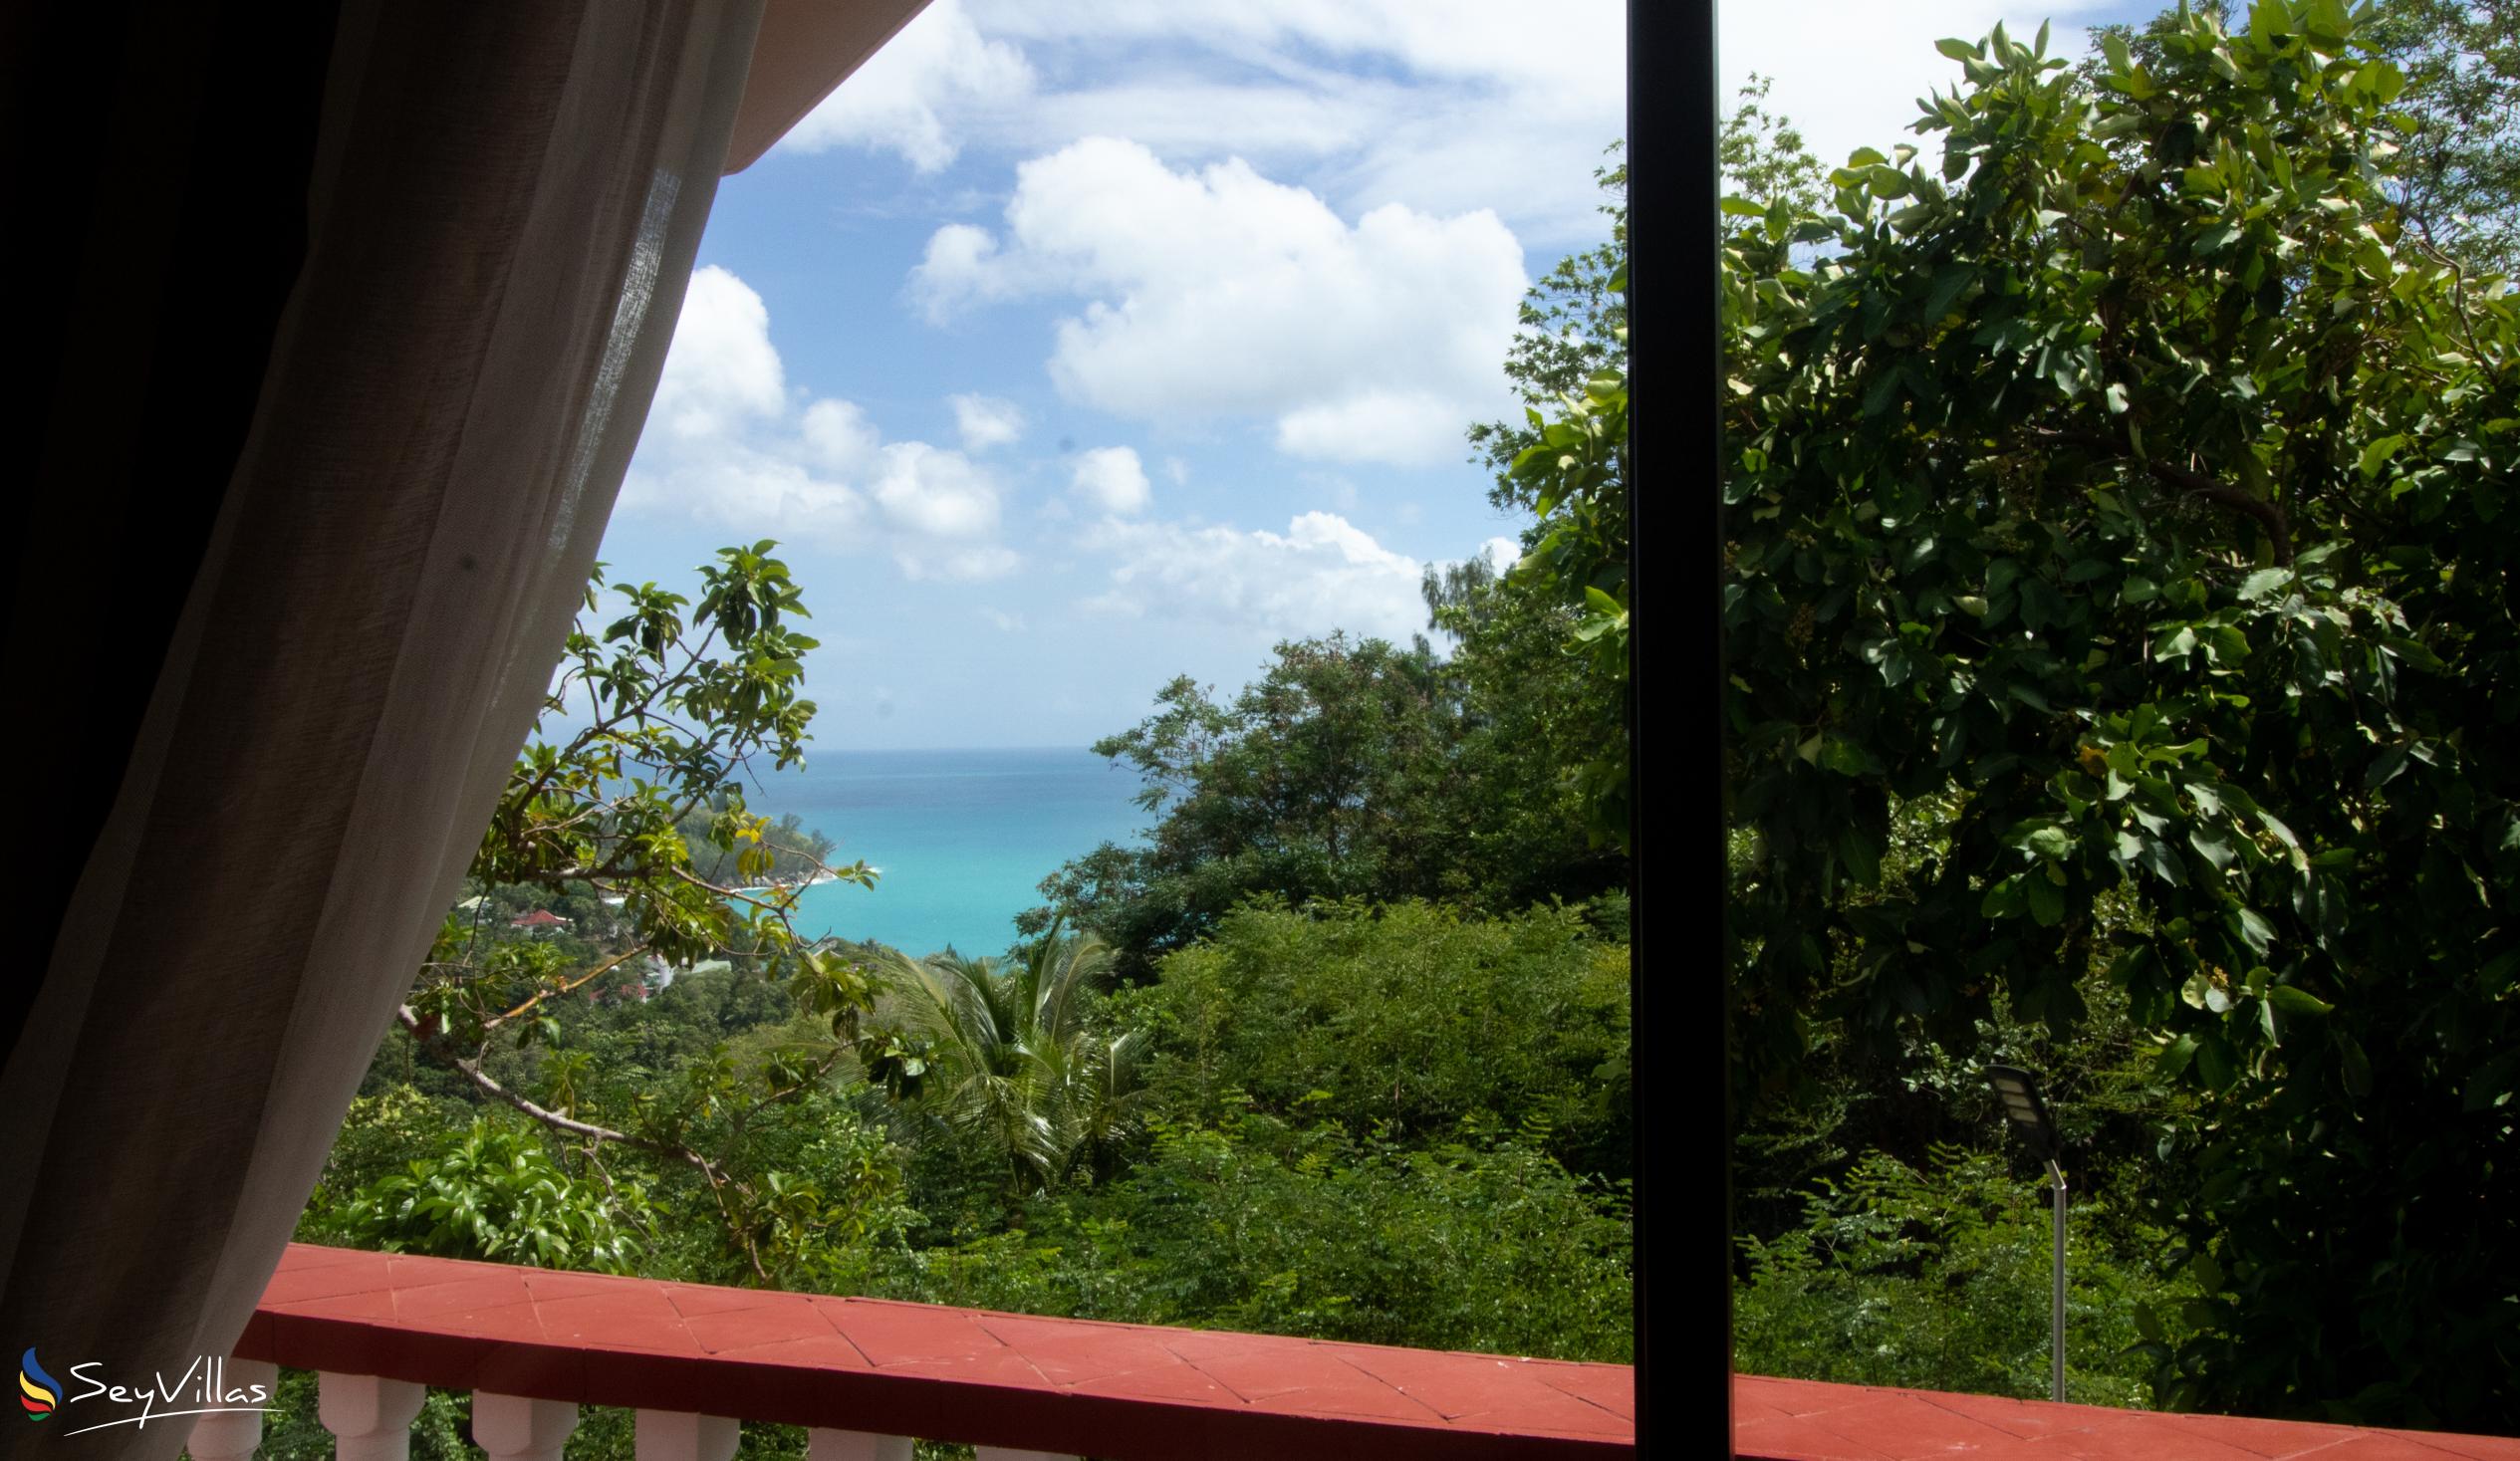 Photo 114: Carana Hilltop Villa - Superior Room - Mahé (Seychelles)